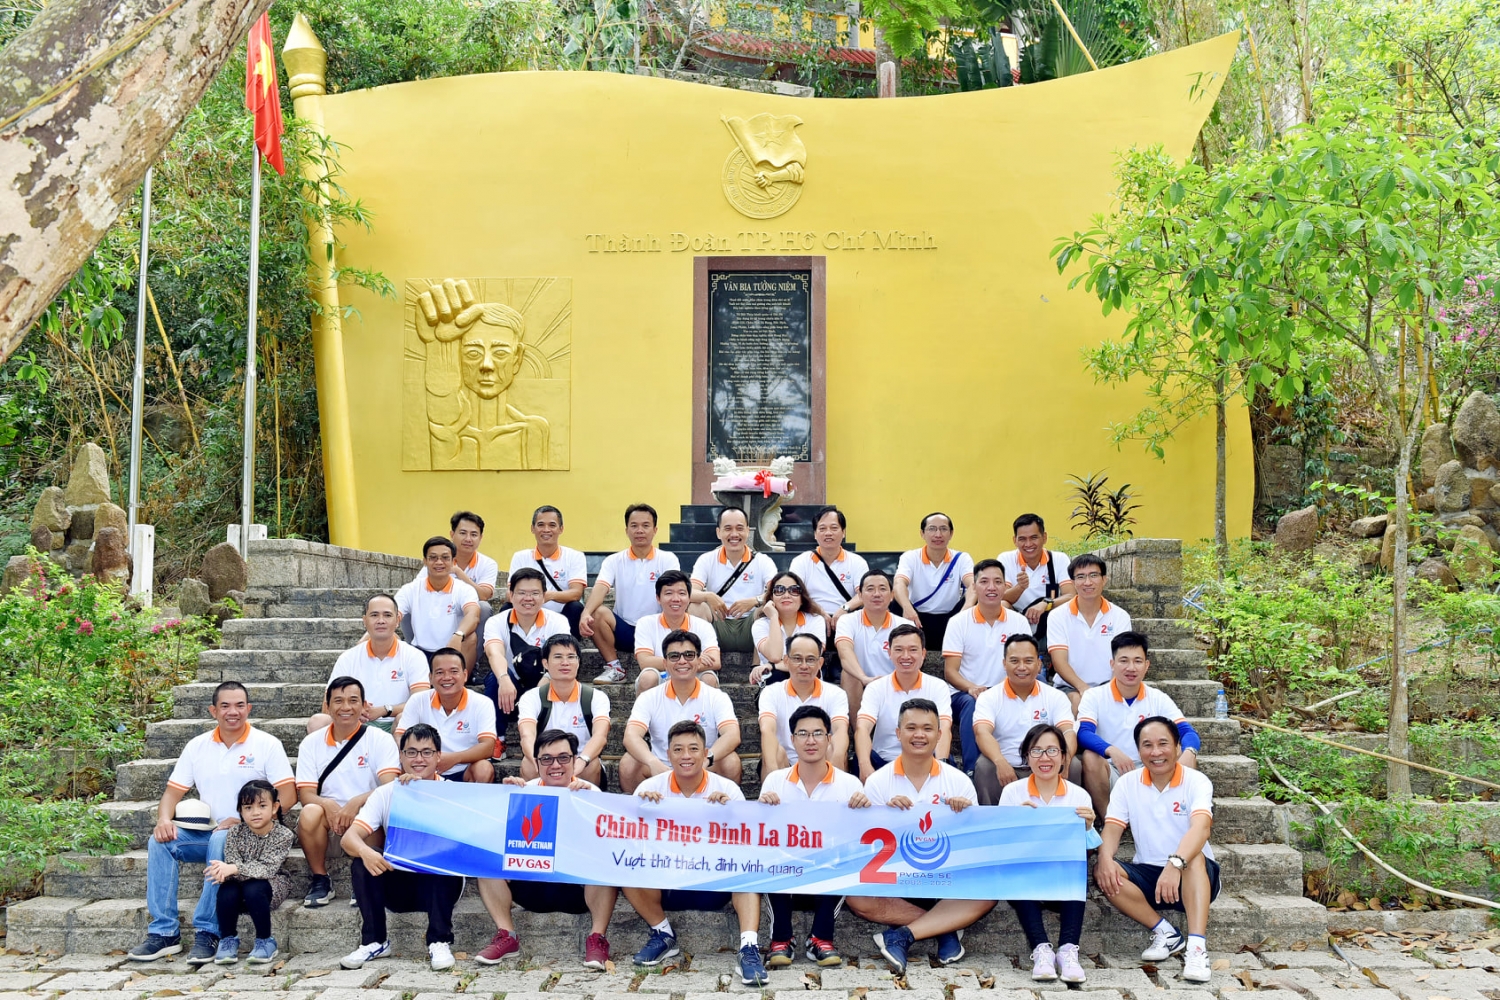 Chi bộ Kỹ thuật an toàn KĐN tại khu tưởng niệm Thành đoàn TP HCM - Núi Dinh, tỉnh Bà Rịa – Vũng Tàu